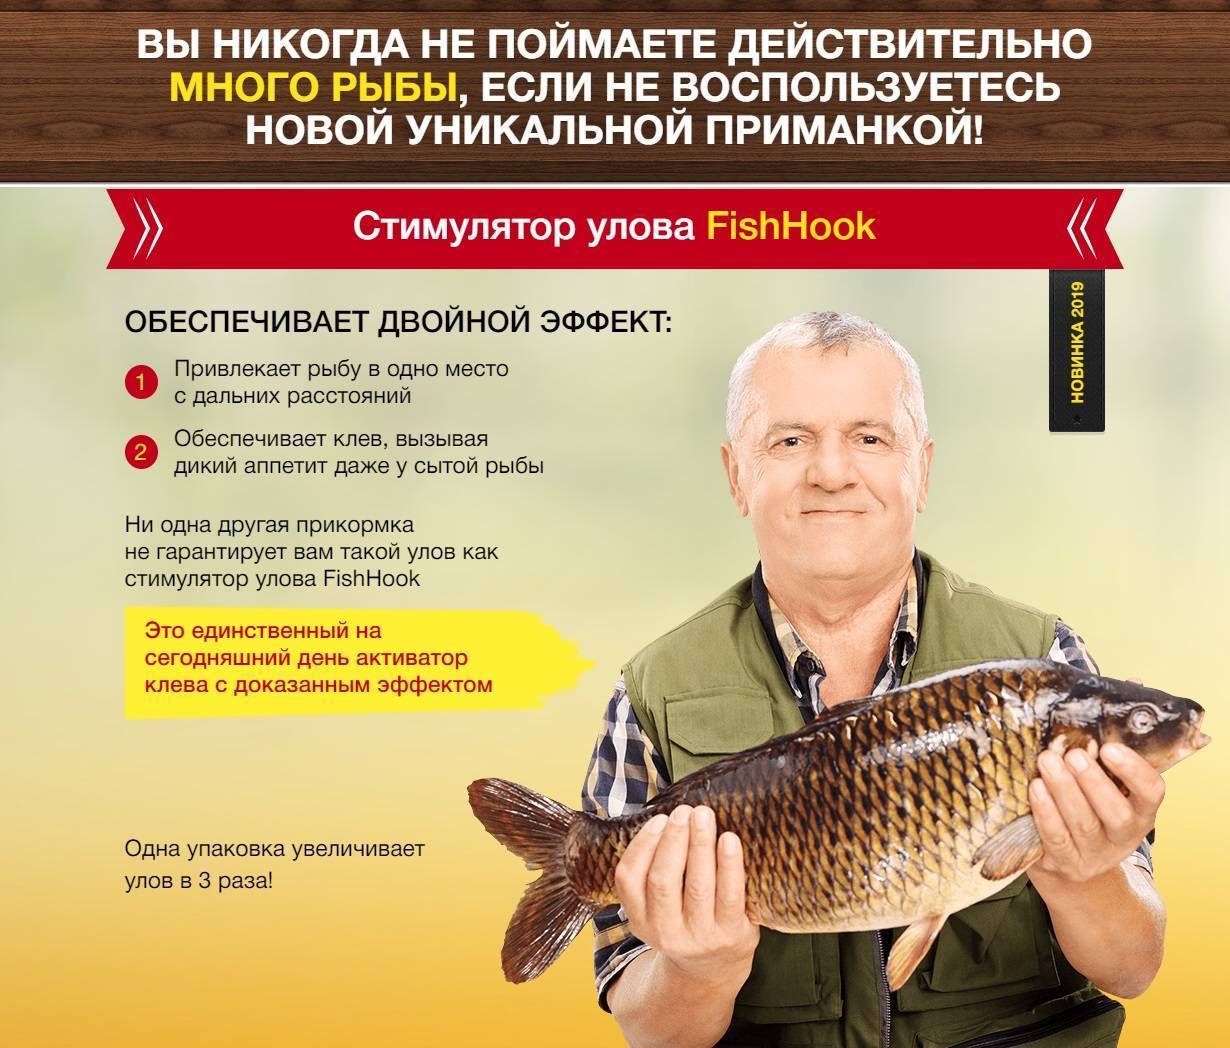 Fishhook активатор клева рыбы